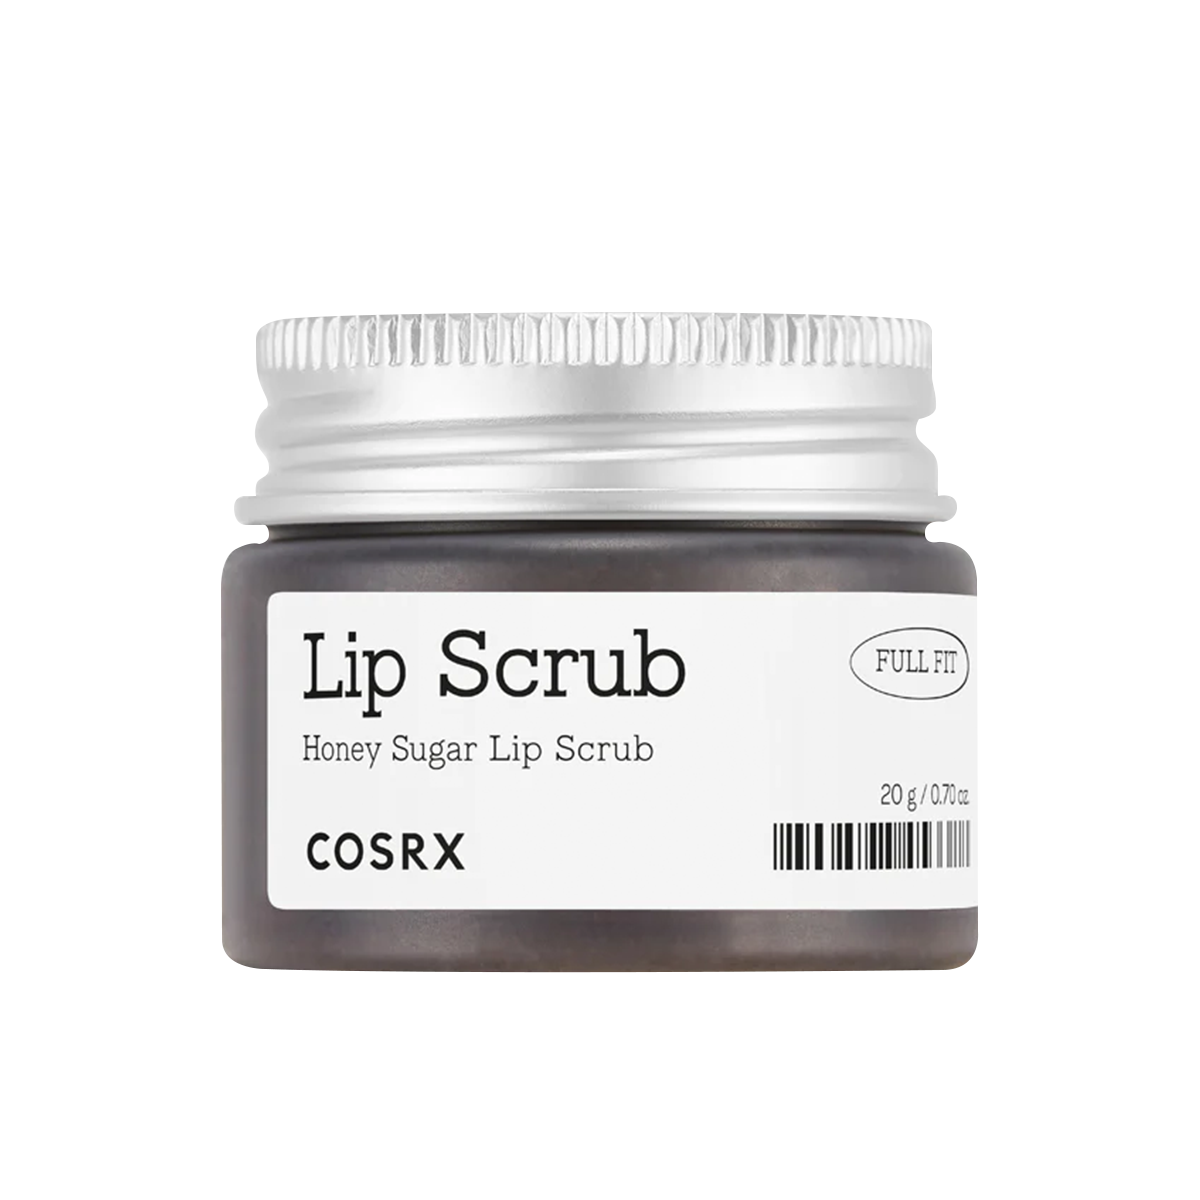 Lip Scrub - Honey Sugar Lip Scrub